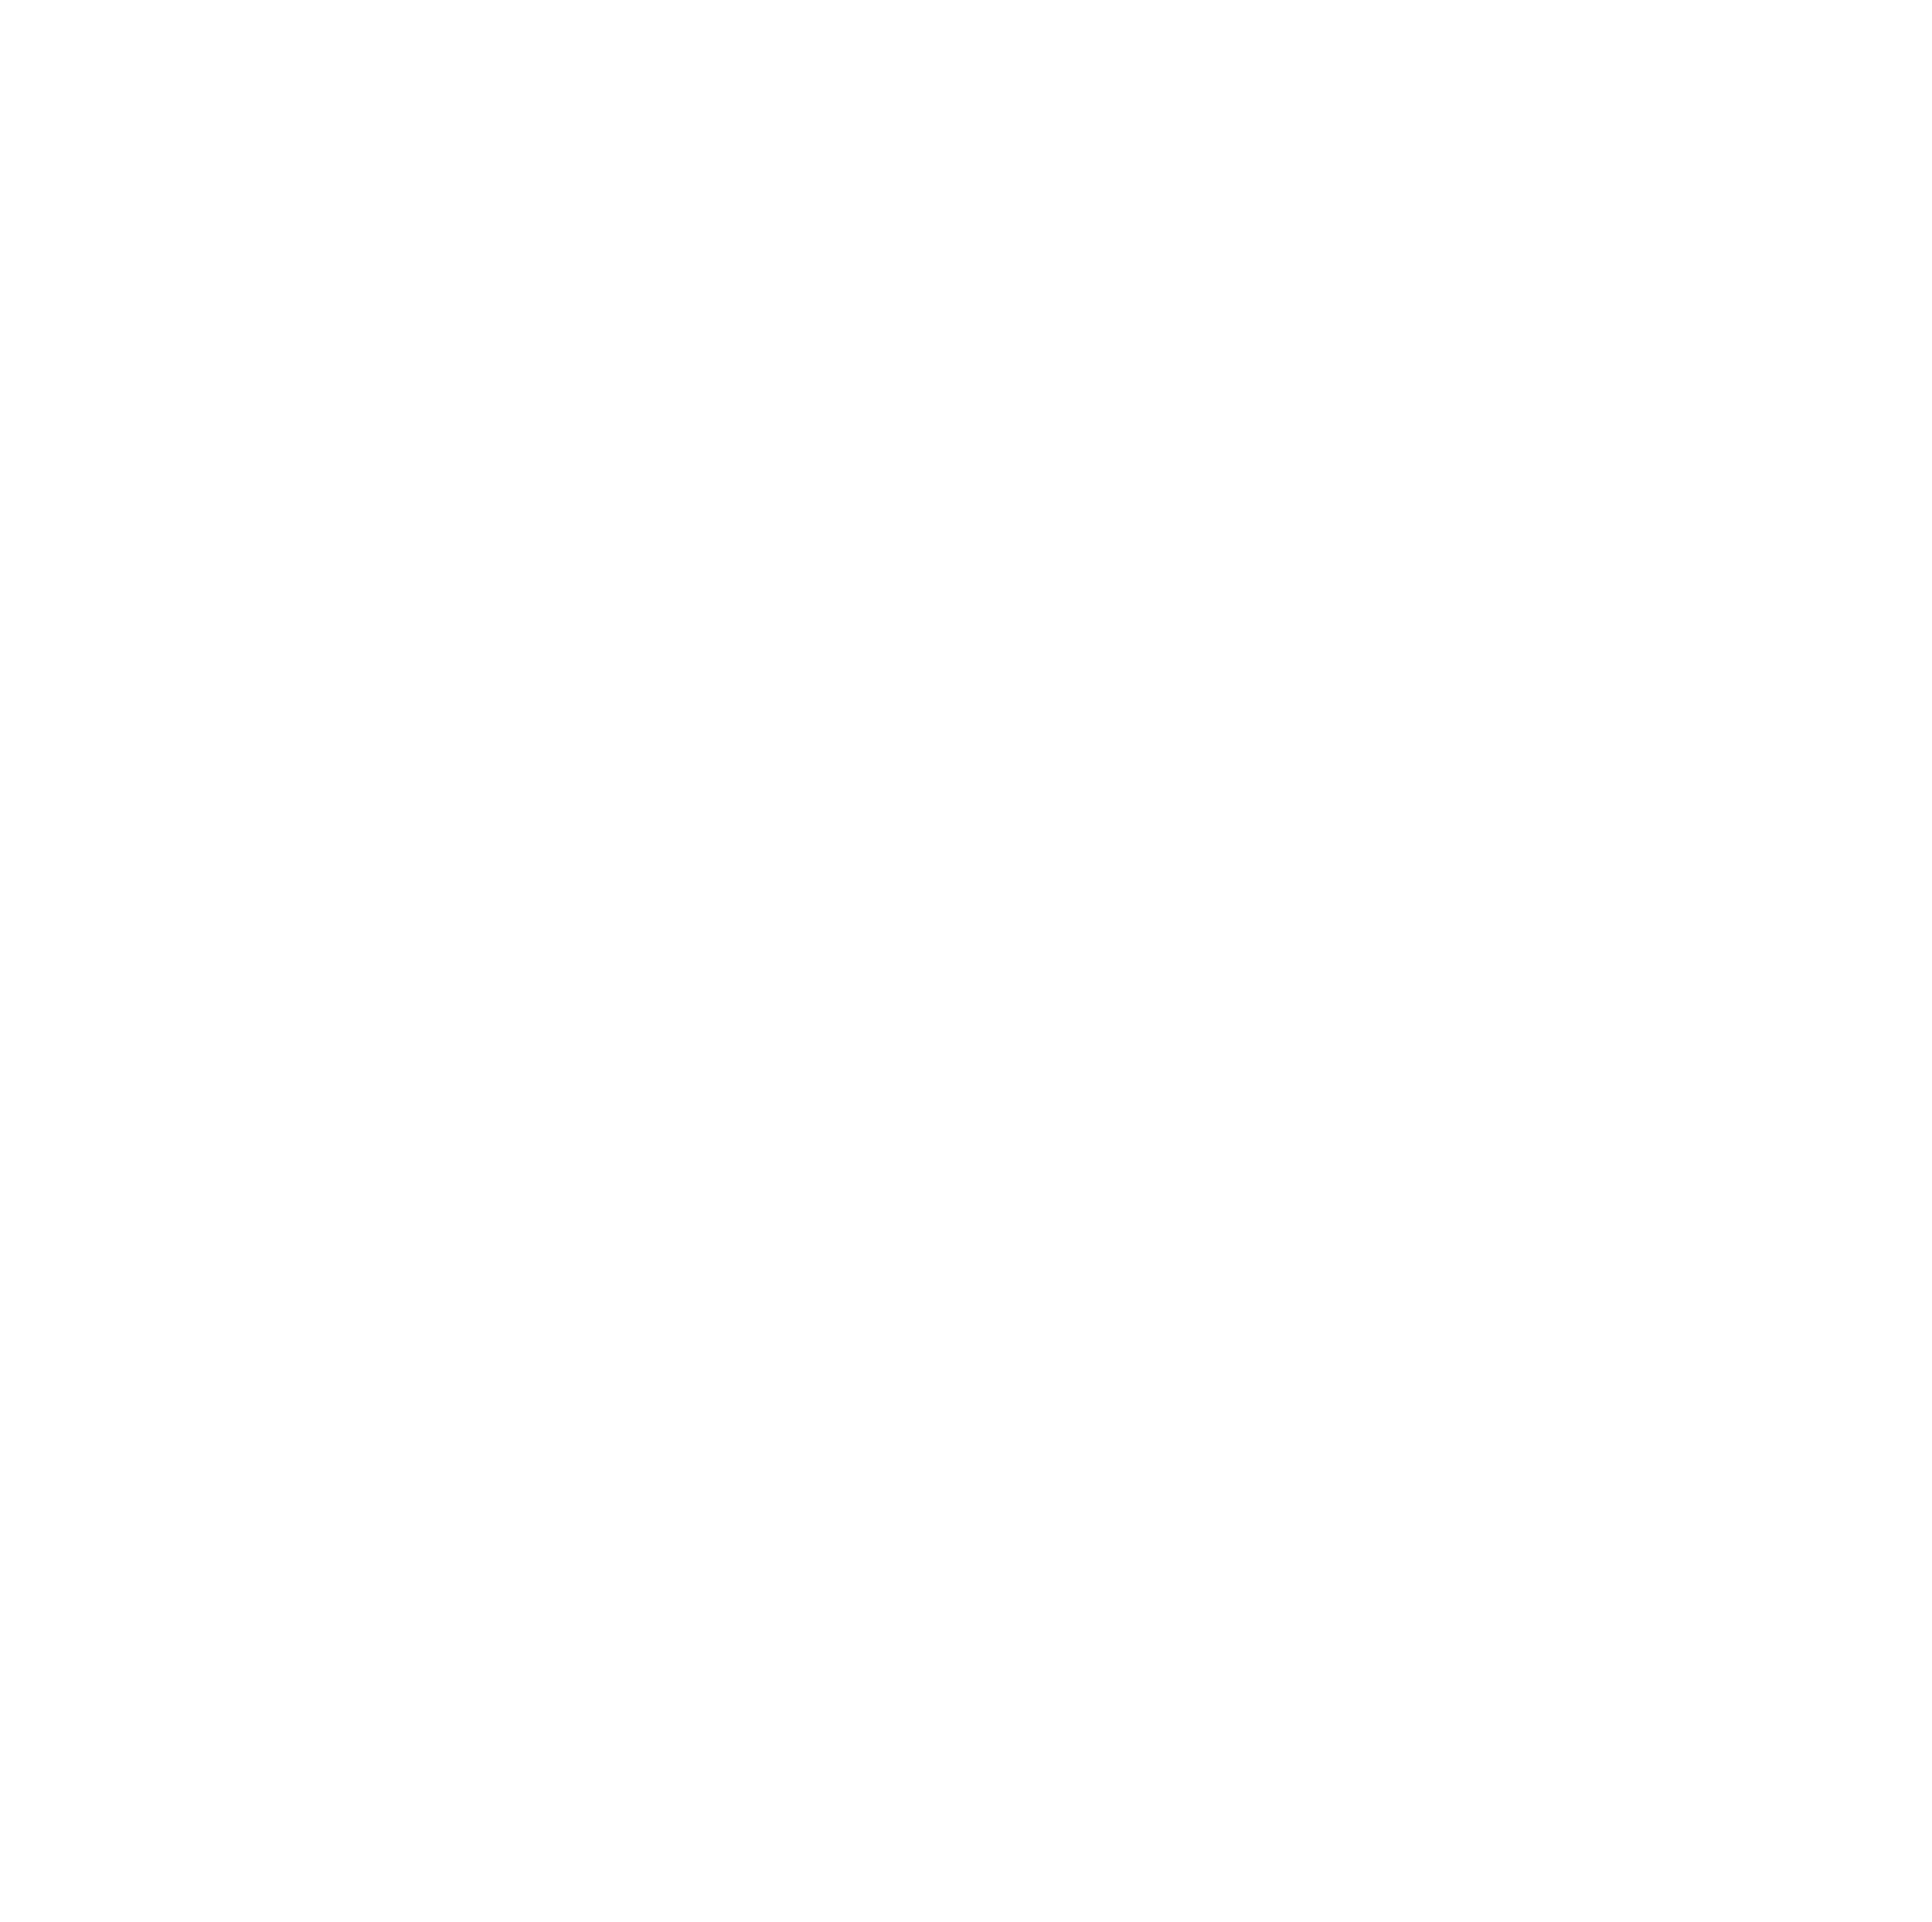 US Access Board star logo